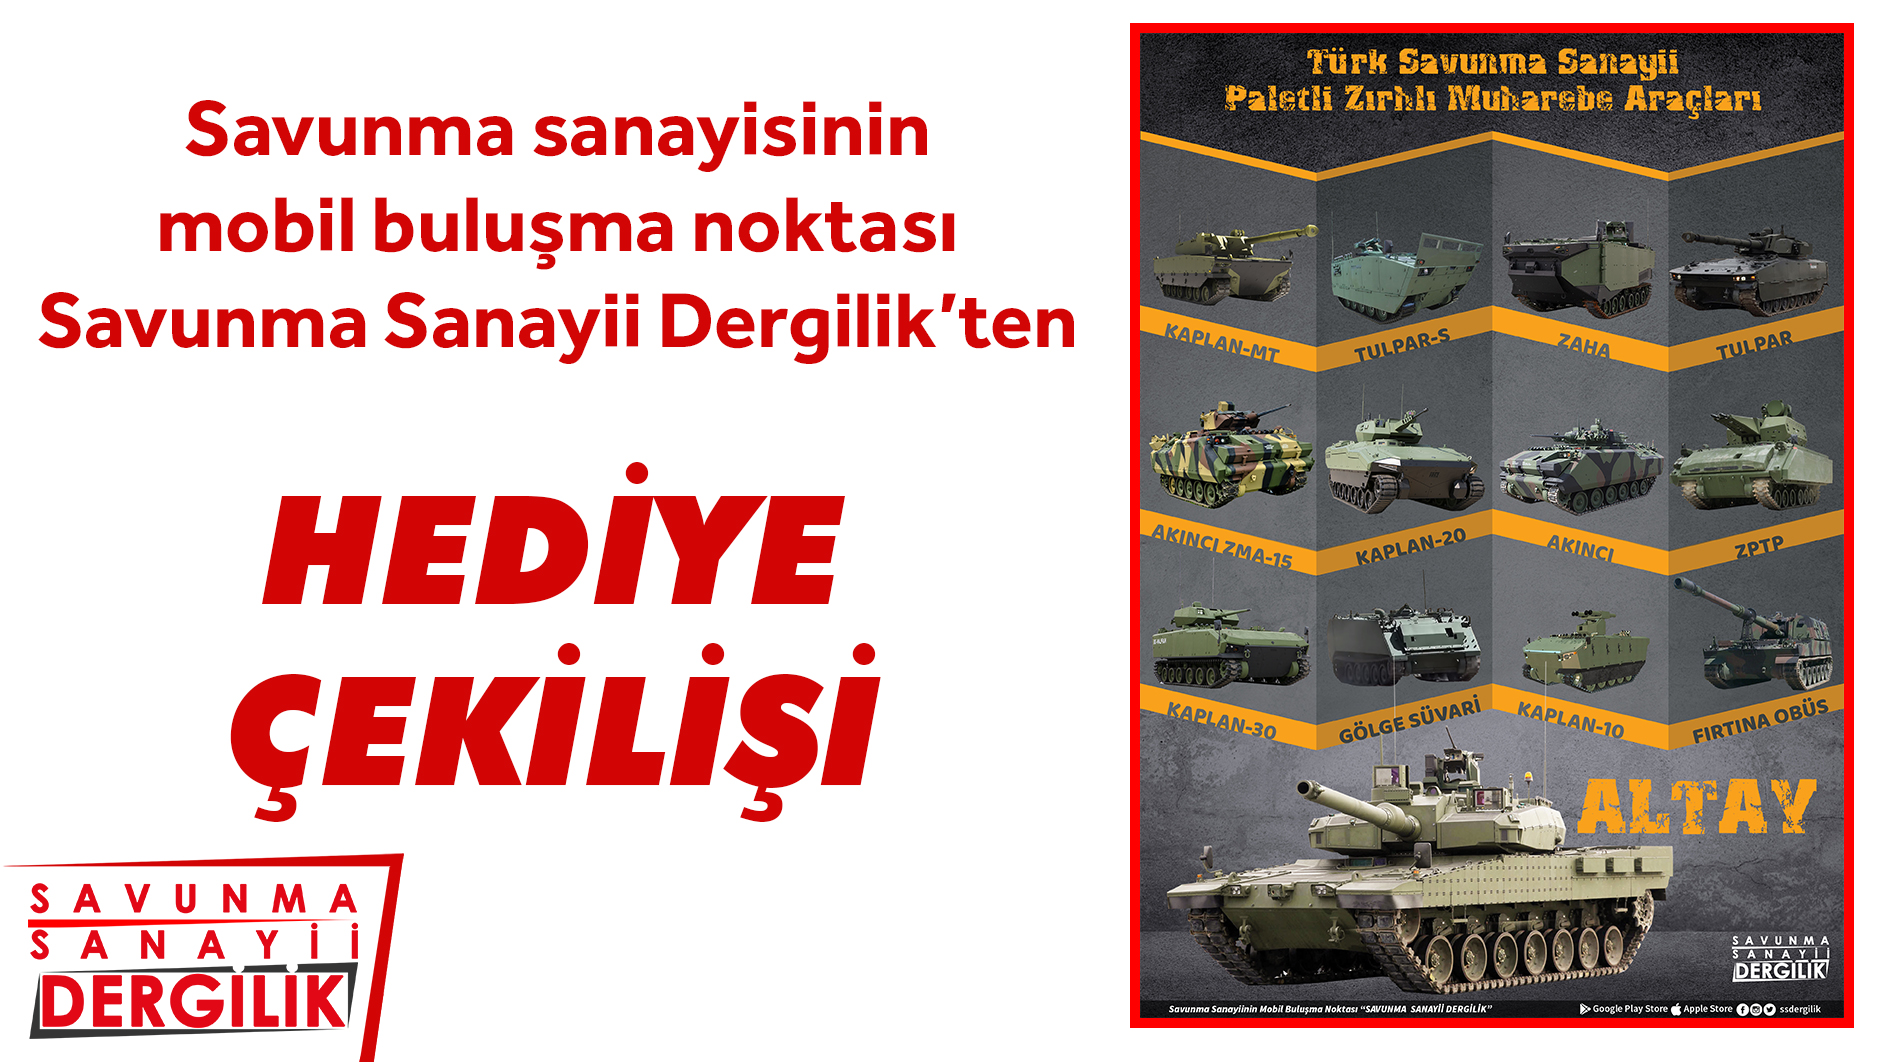 Savunma Sanayii Dergilik'ten hediye çekilişi "Türk Savunma Sanayii Paletli Kara Araçları" 